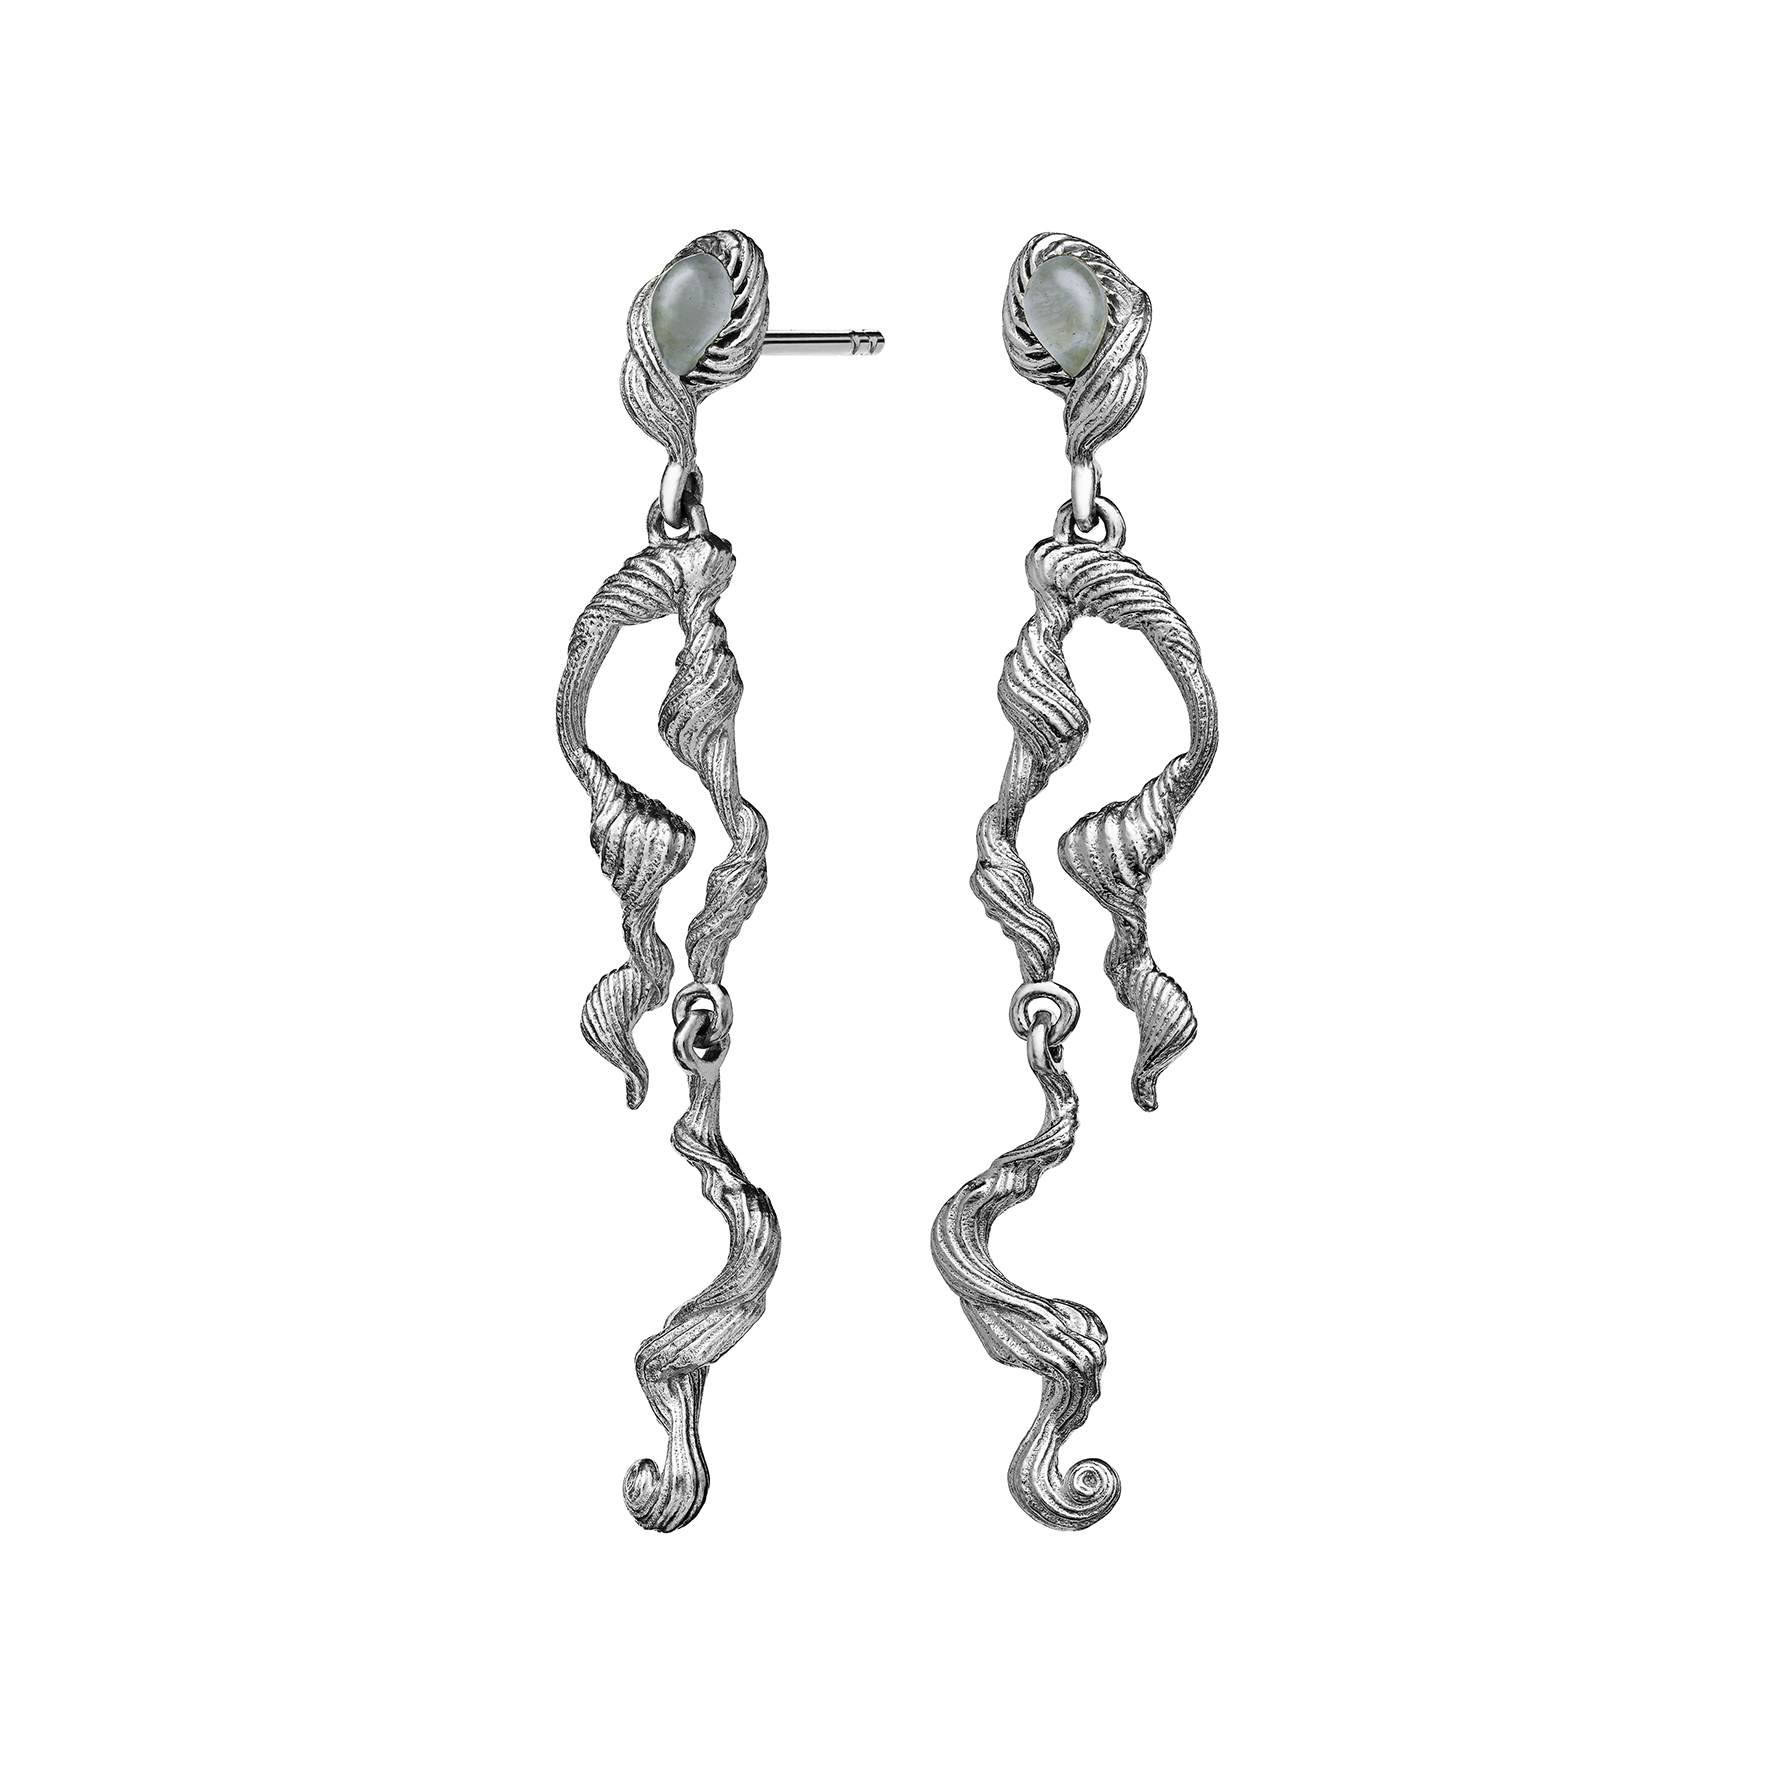 Idun Earrings from Maanesten in Silver Sterling 925|Akvamarin